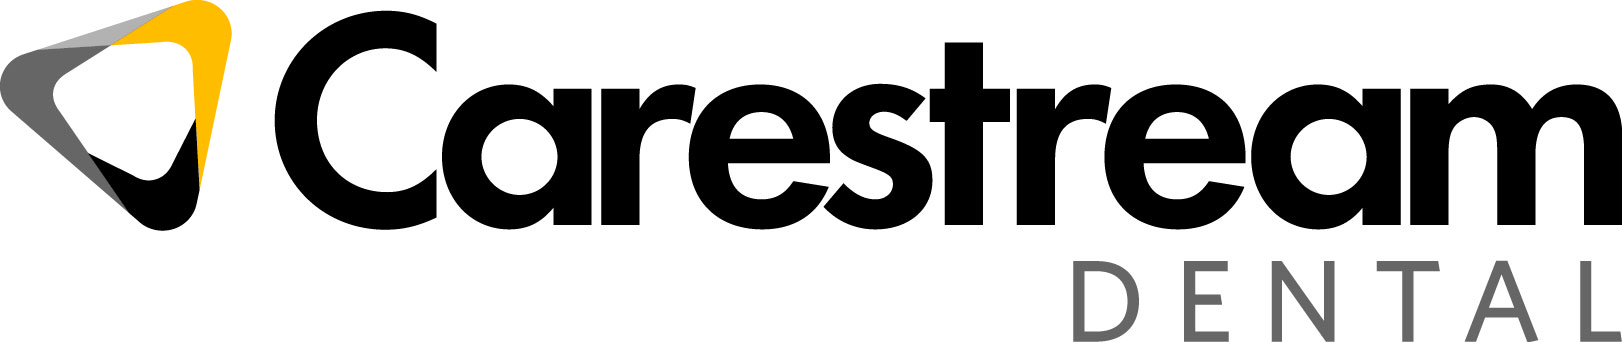 Logo Carestream